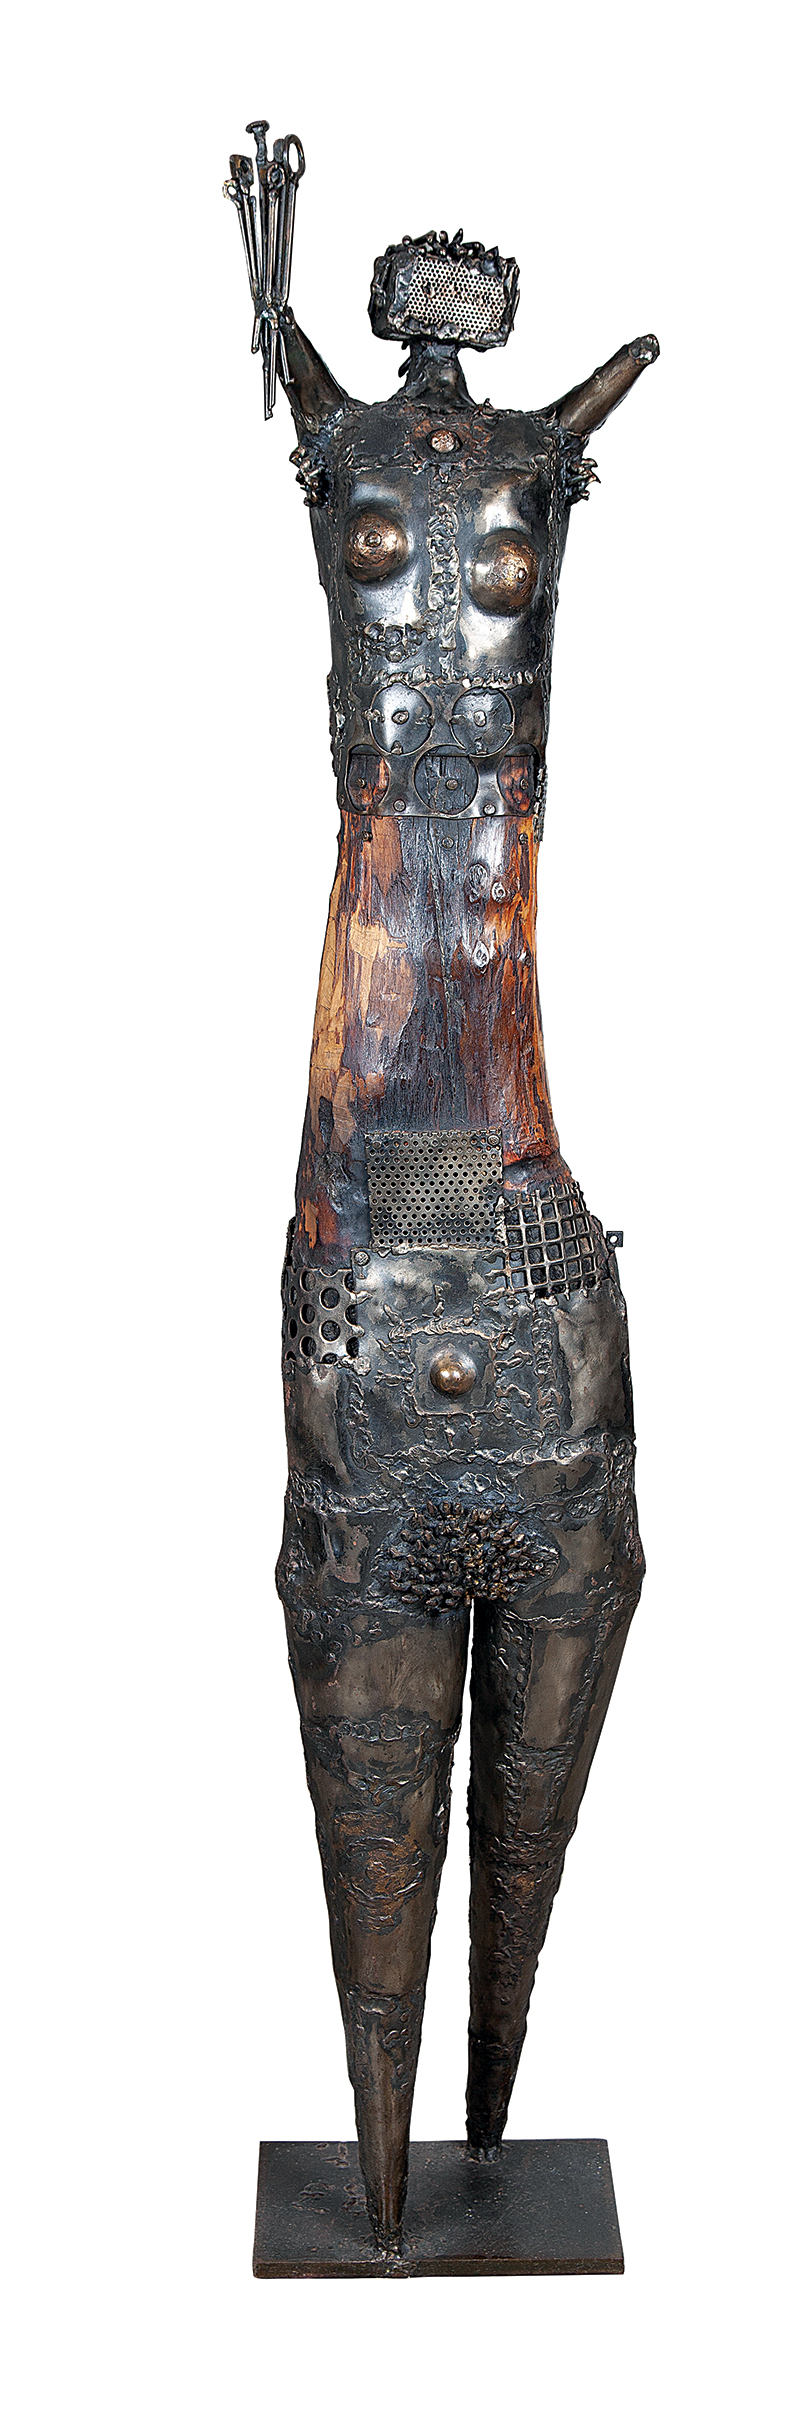 FRANCISCO STOCKINGER - `Guerreira` - Escultura em ferro e madeira - Assinada 1983. - 140 cm